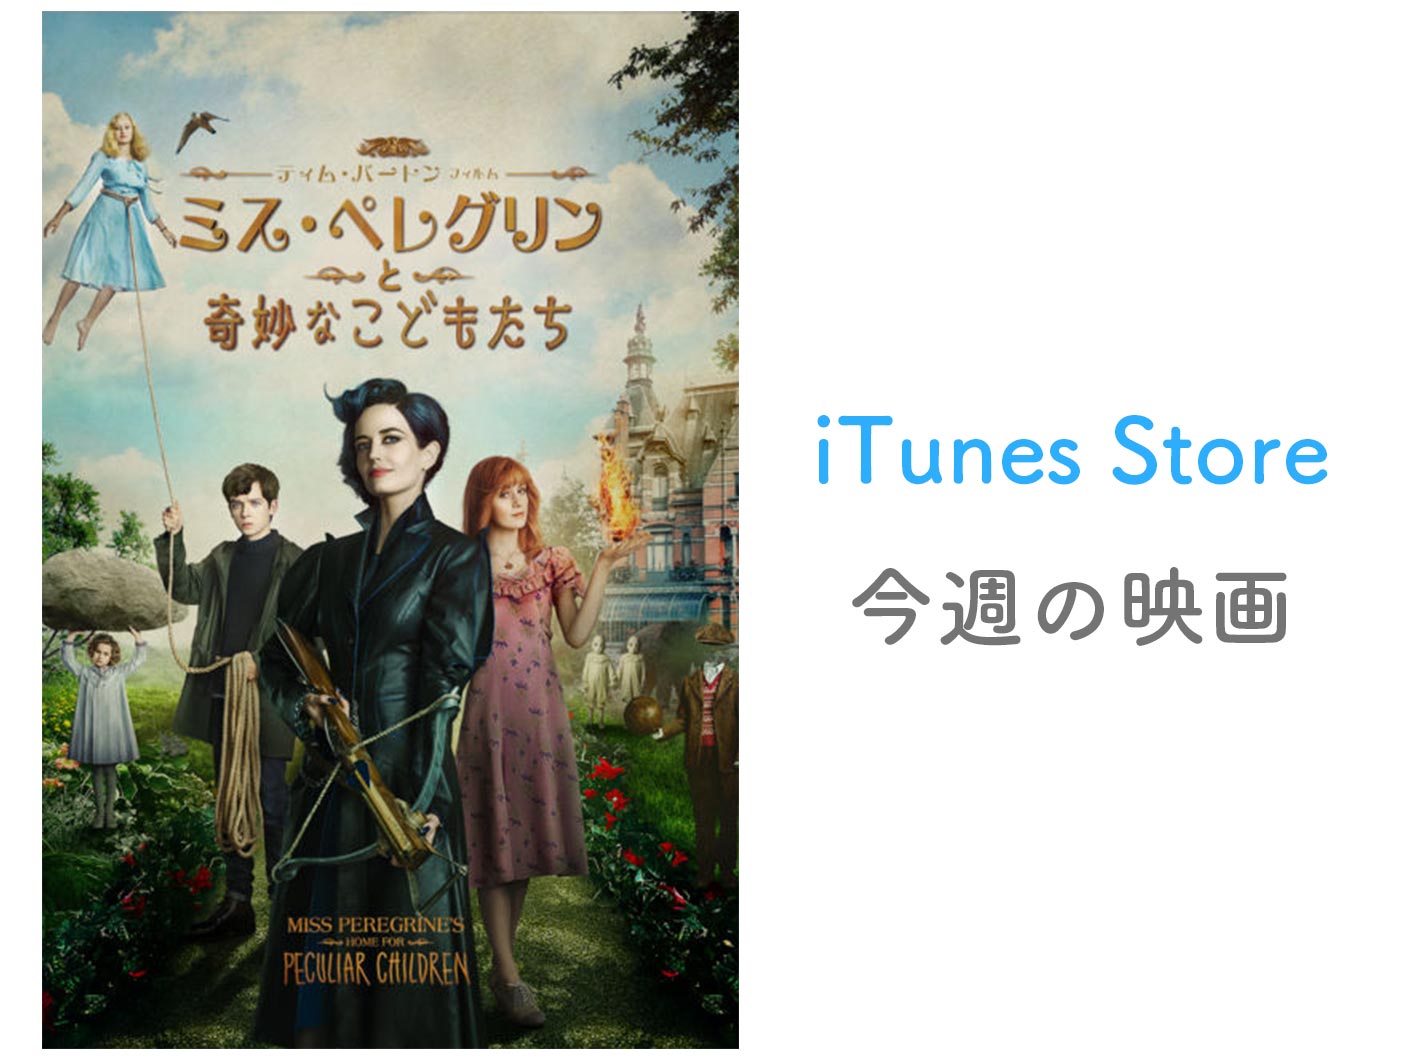 【レンタル100円】iTunes Store、「今週の映画」として「ミス・ペレグリンと奇妙なこどもたち」をピックアップ